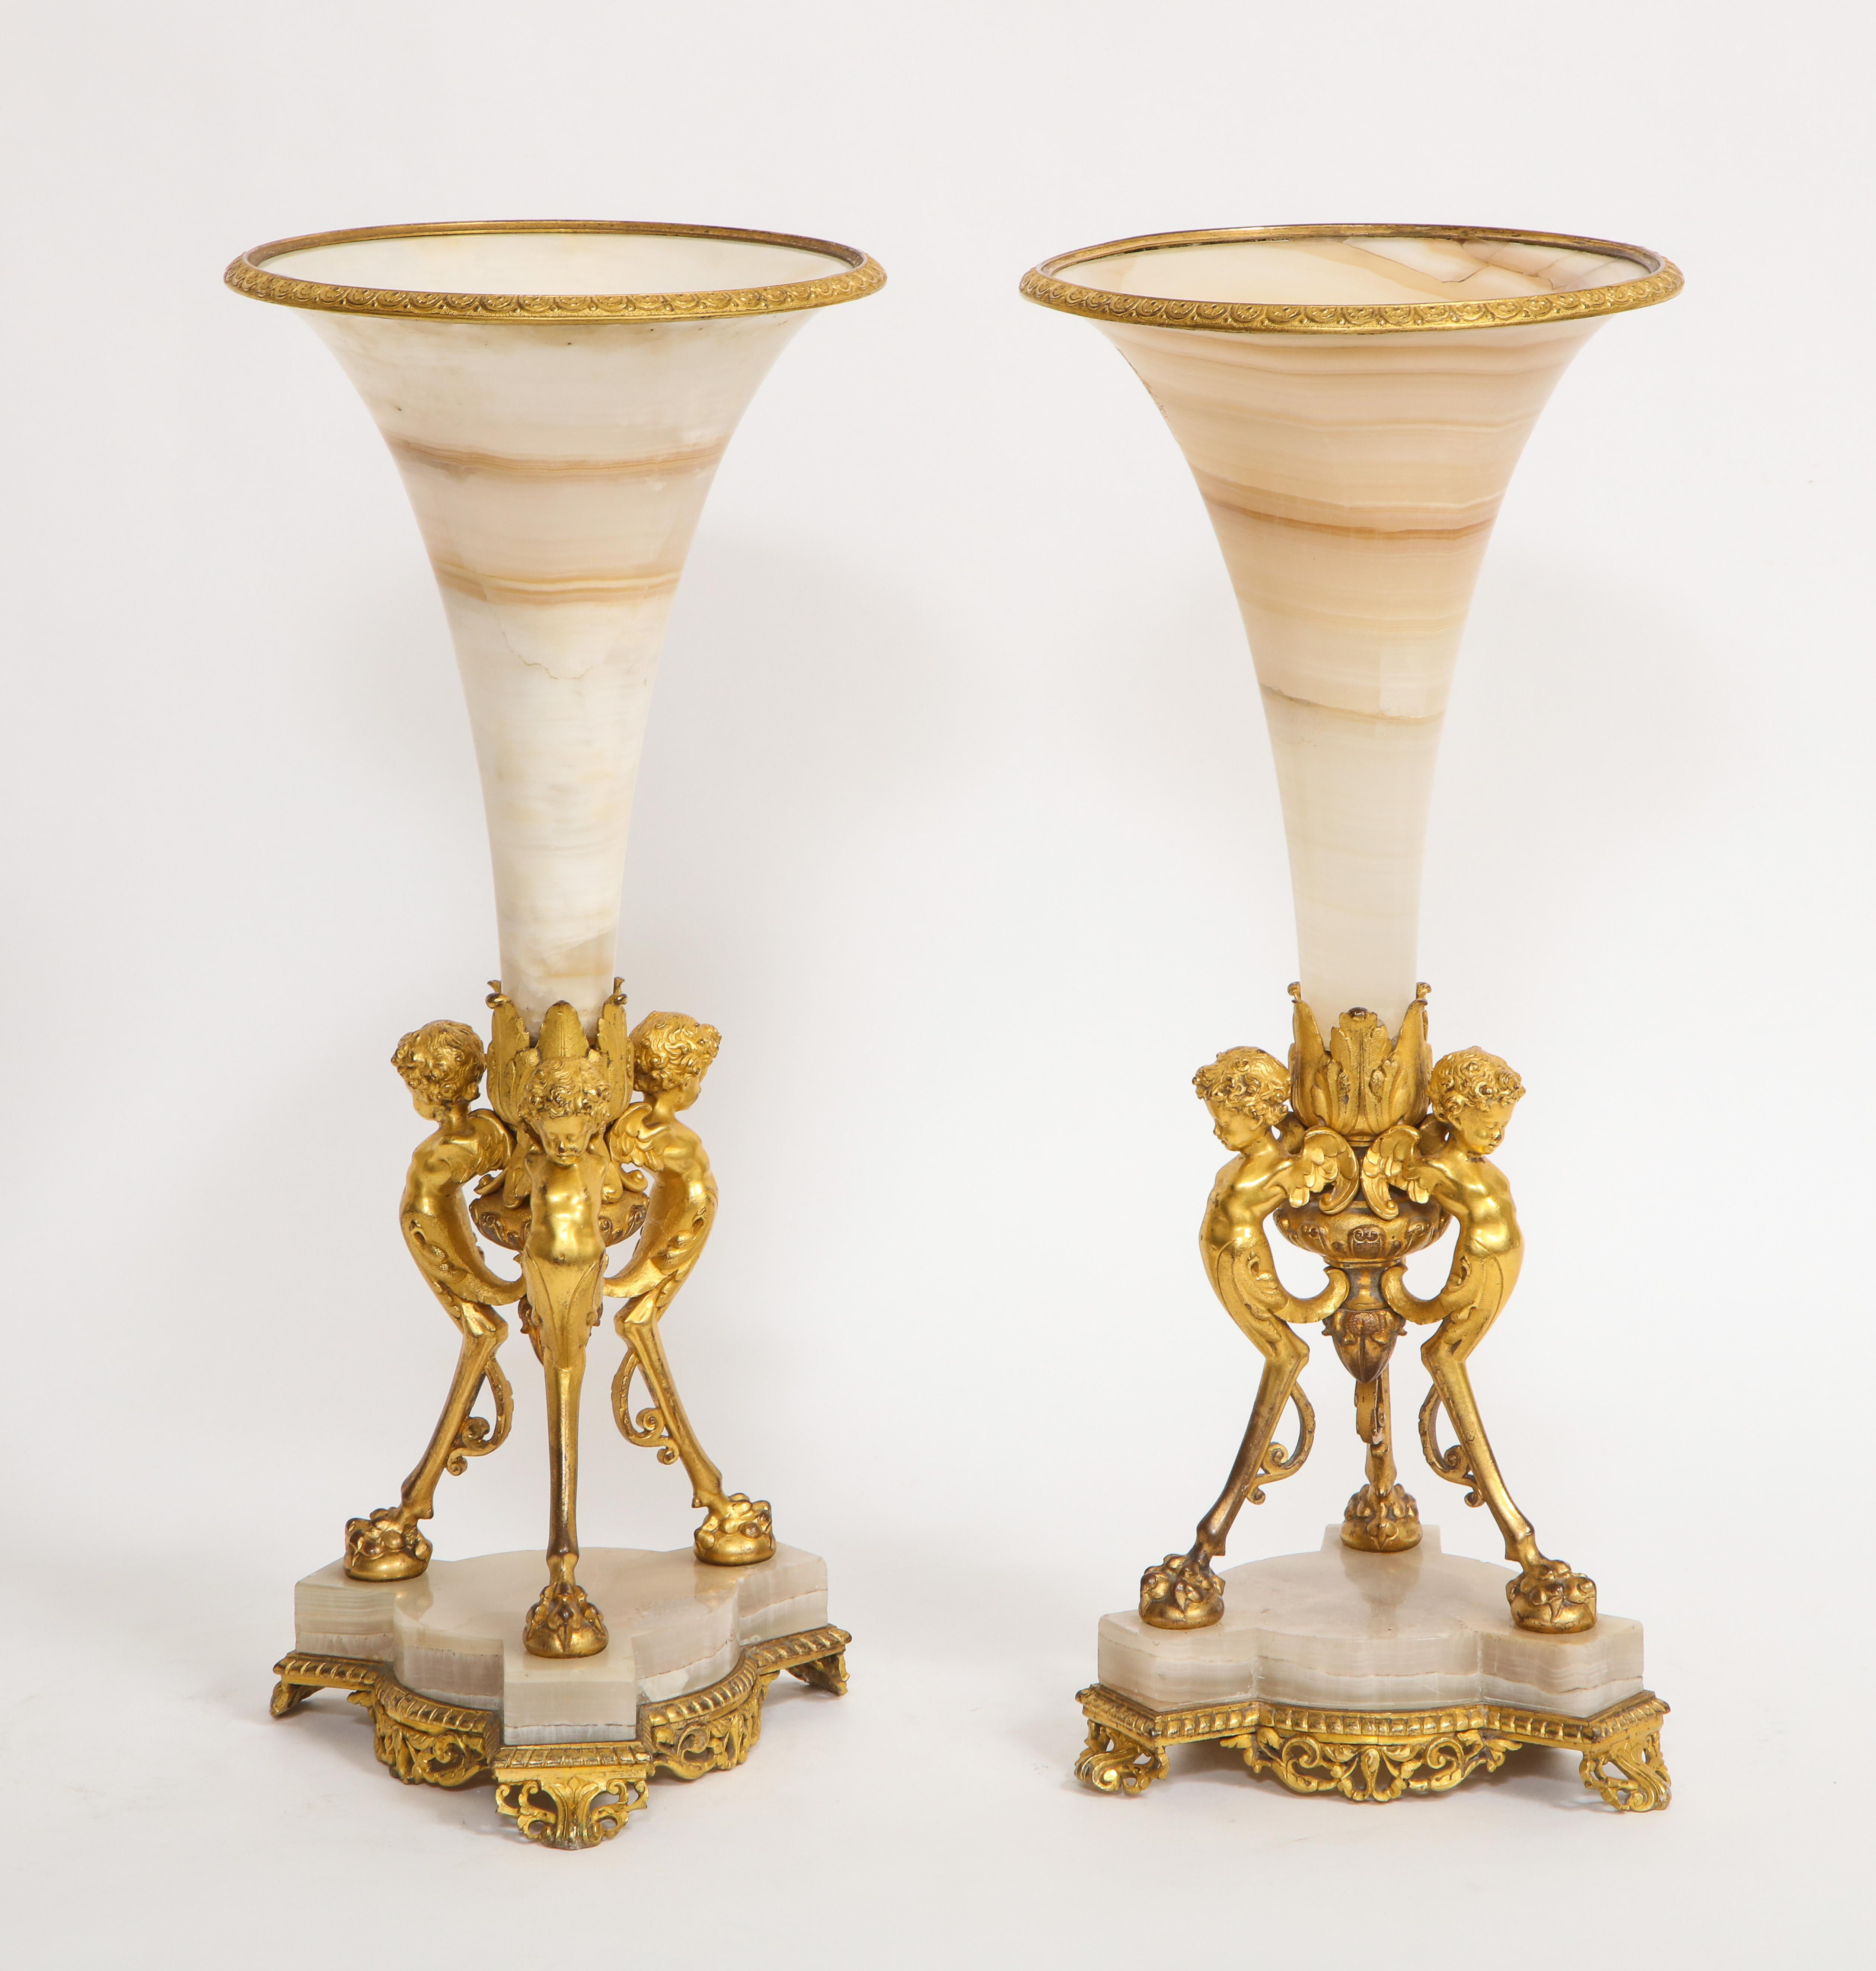 Ein fabelhaftes Paar französischer figuraler Alabaster-Trompetenvasen aus Dore-Bronze des 19. Jede ägyptische Alabastervase ist wunderschön von Hand geschnitzt und mit feinster Steinbearbeitung handpoliert. Die Vasen sind auf unglaublich